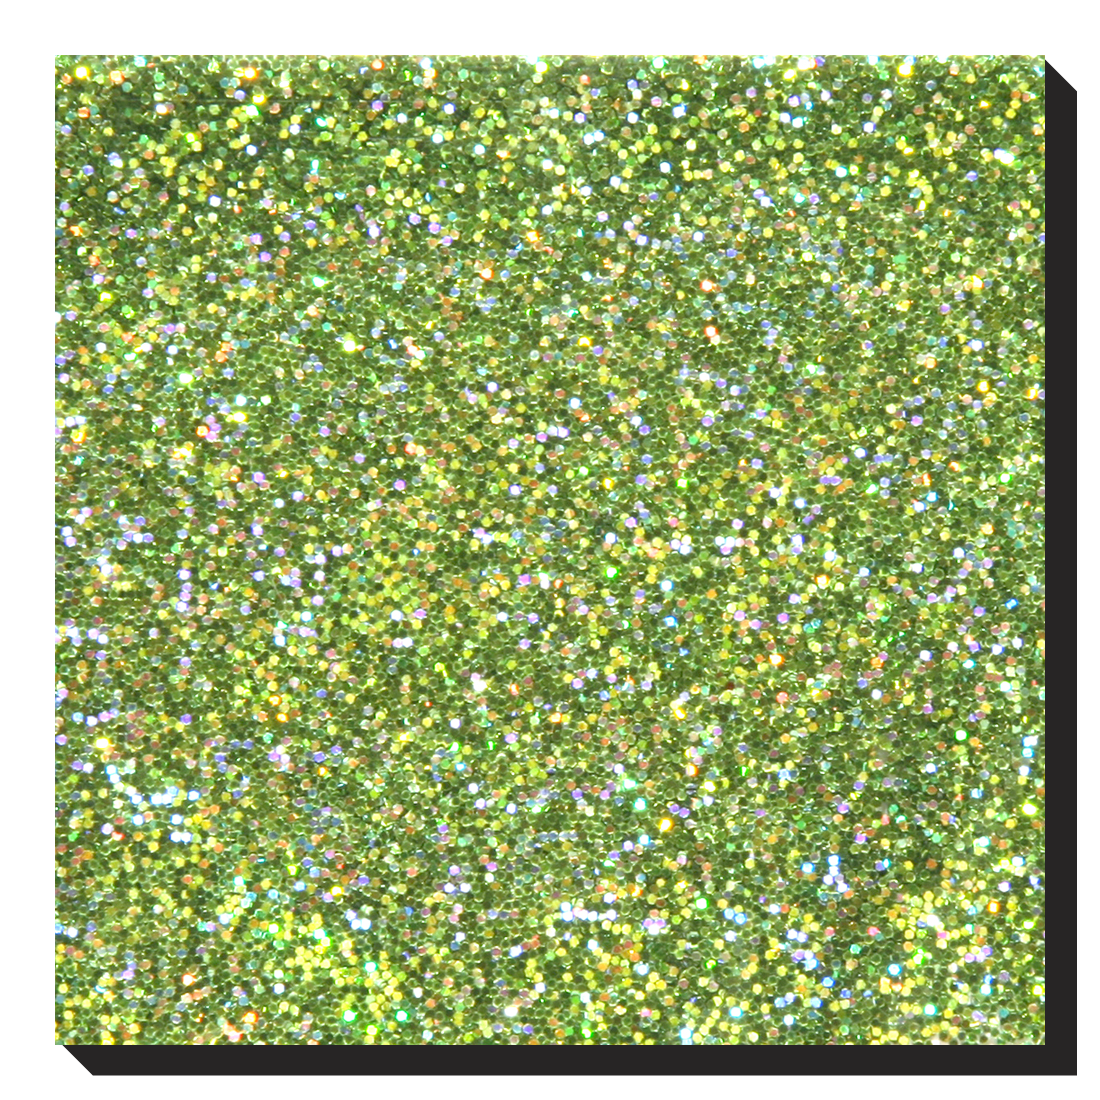 LB601-Hologram LT. Green Holographic / Laser